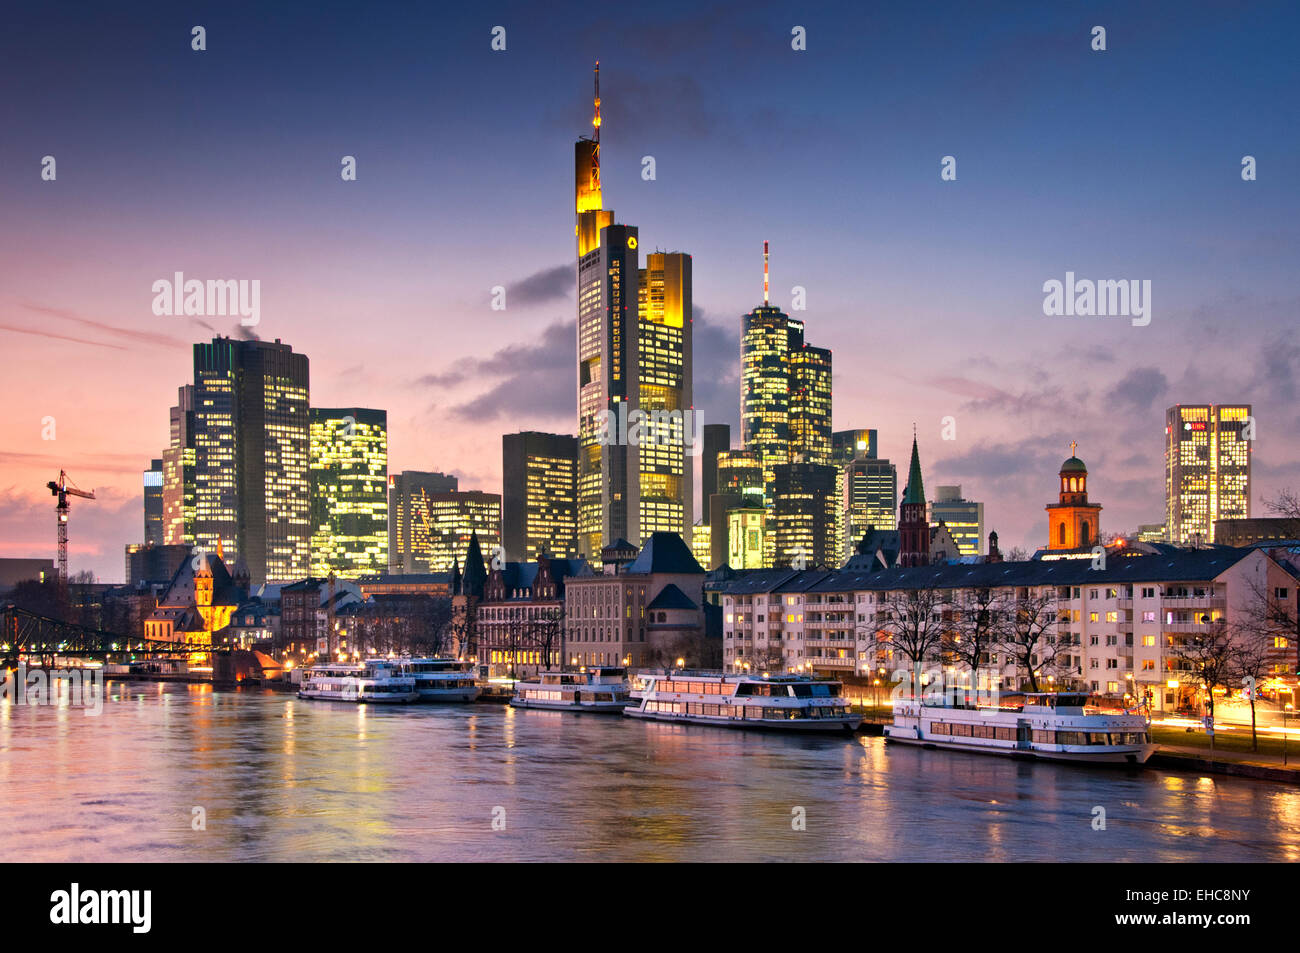 La rivière Main et gratte-ciel du quartier des affaires de Francfort au coucher du soleil, Francfort, Allemagne, Europe Banque D'Images